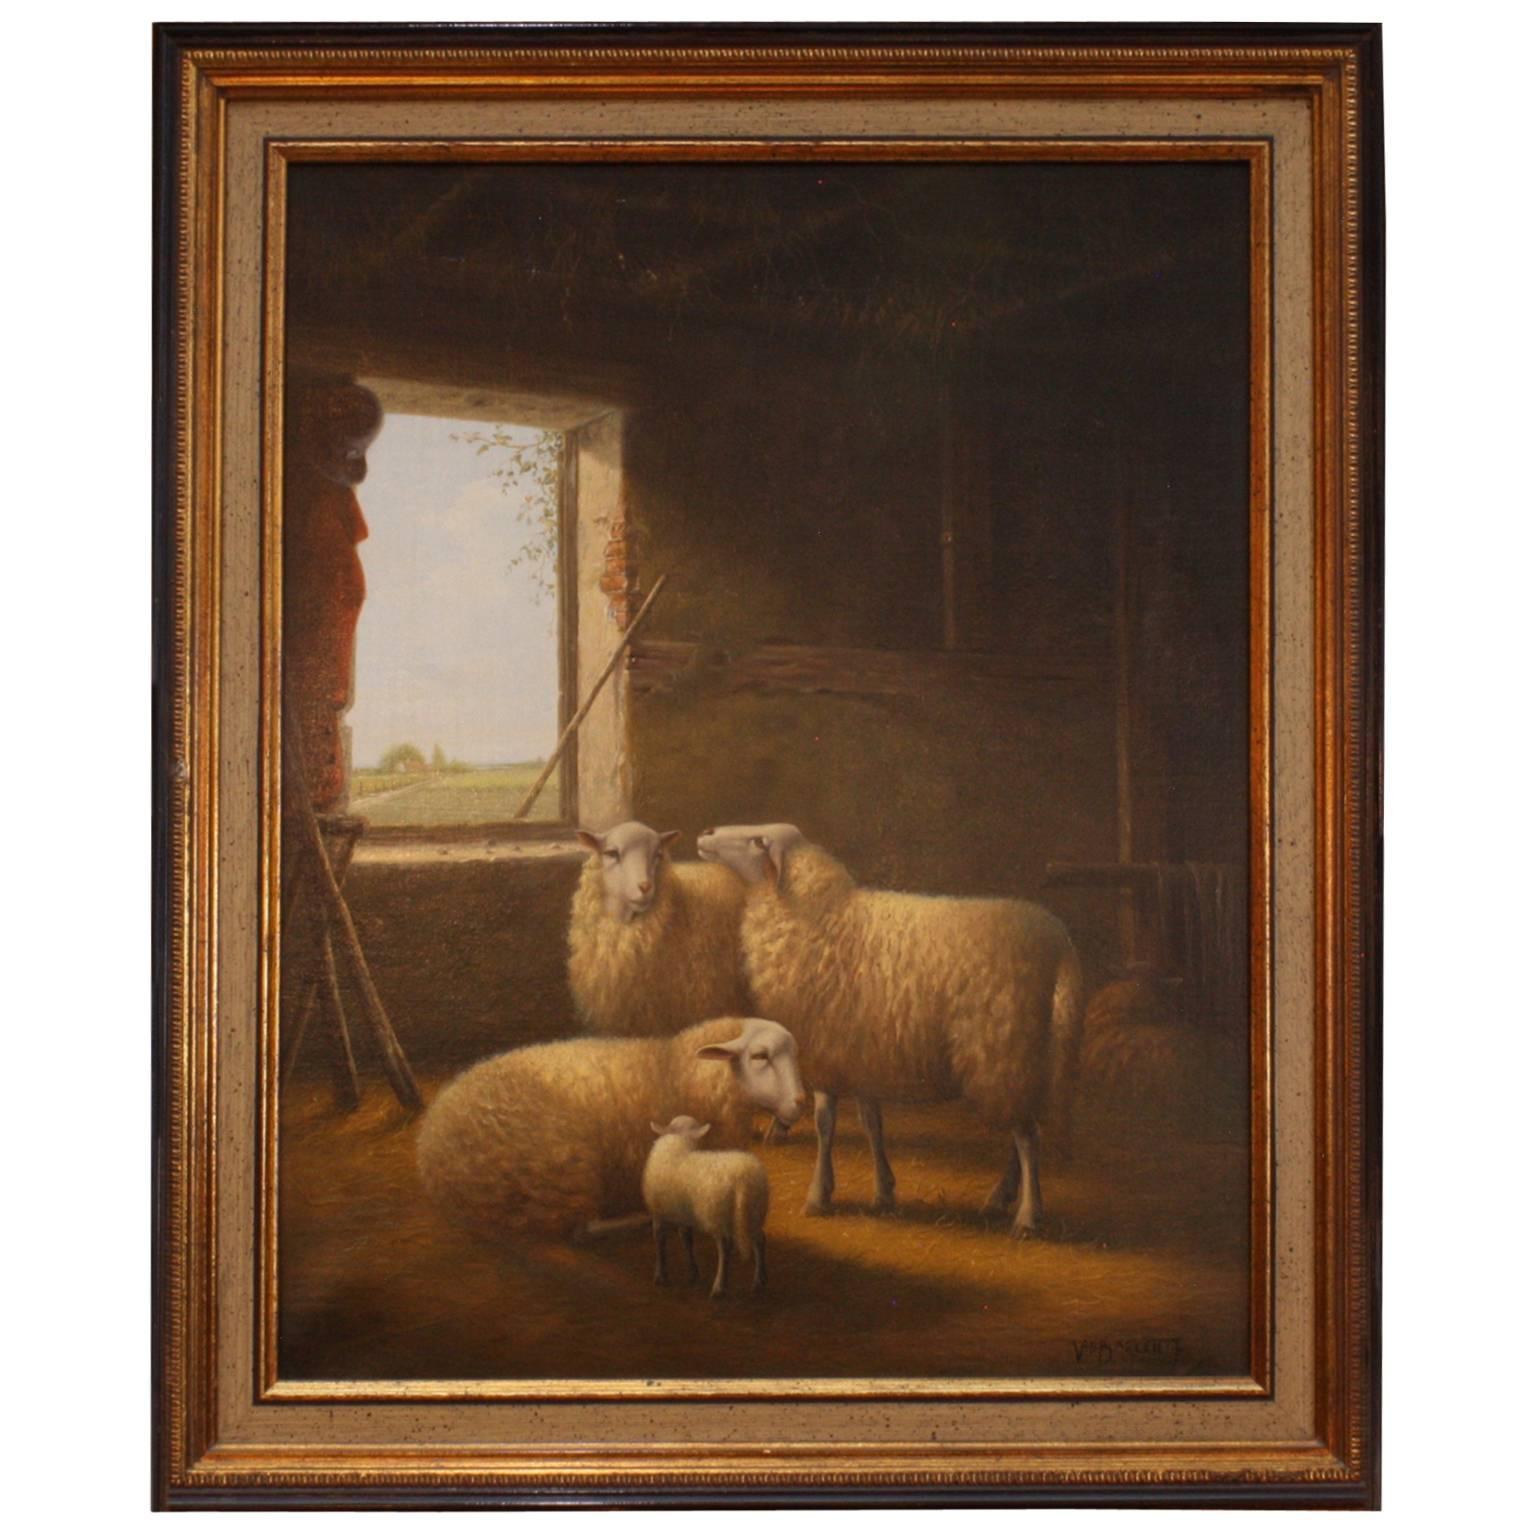 J. Van Baelen huile sur toile, « Sheep in a Barn » (chèvre dans un grange).